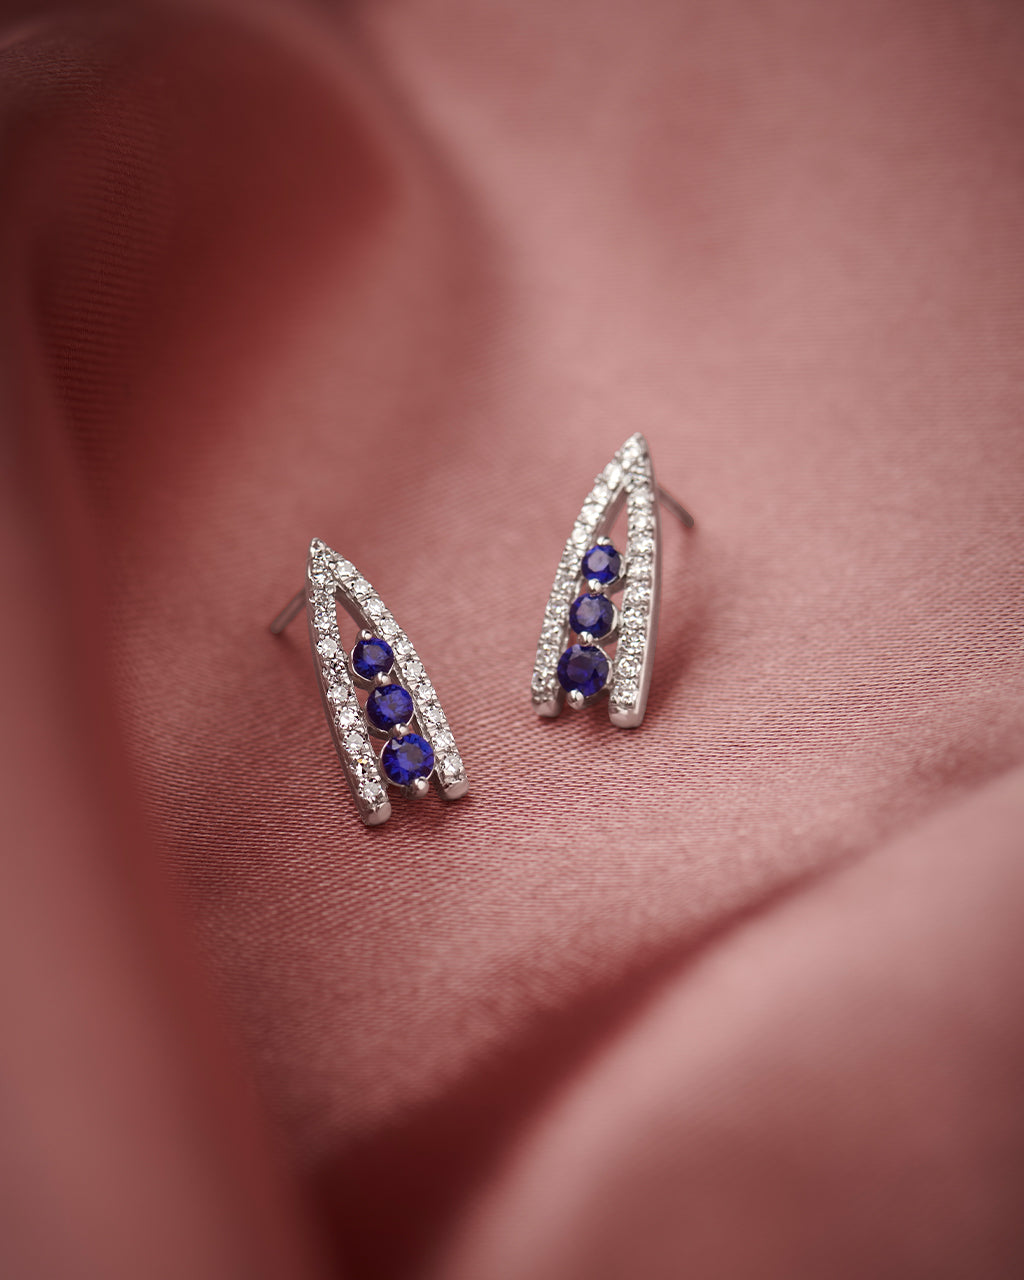 Created Sapphire Wishbone Earrings